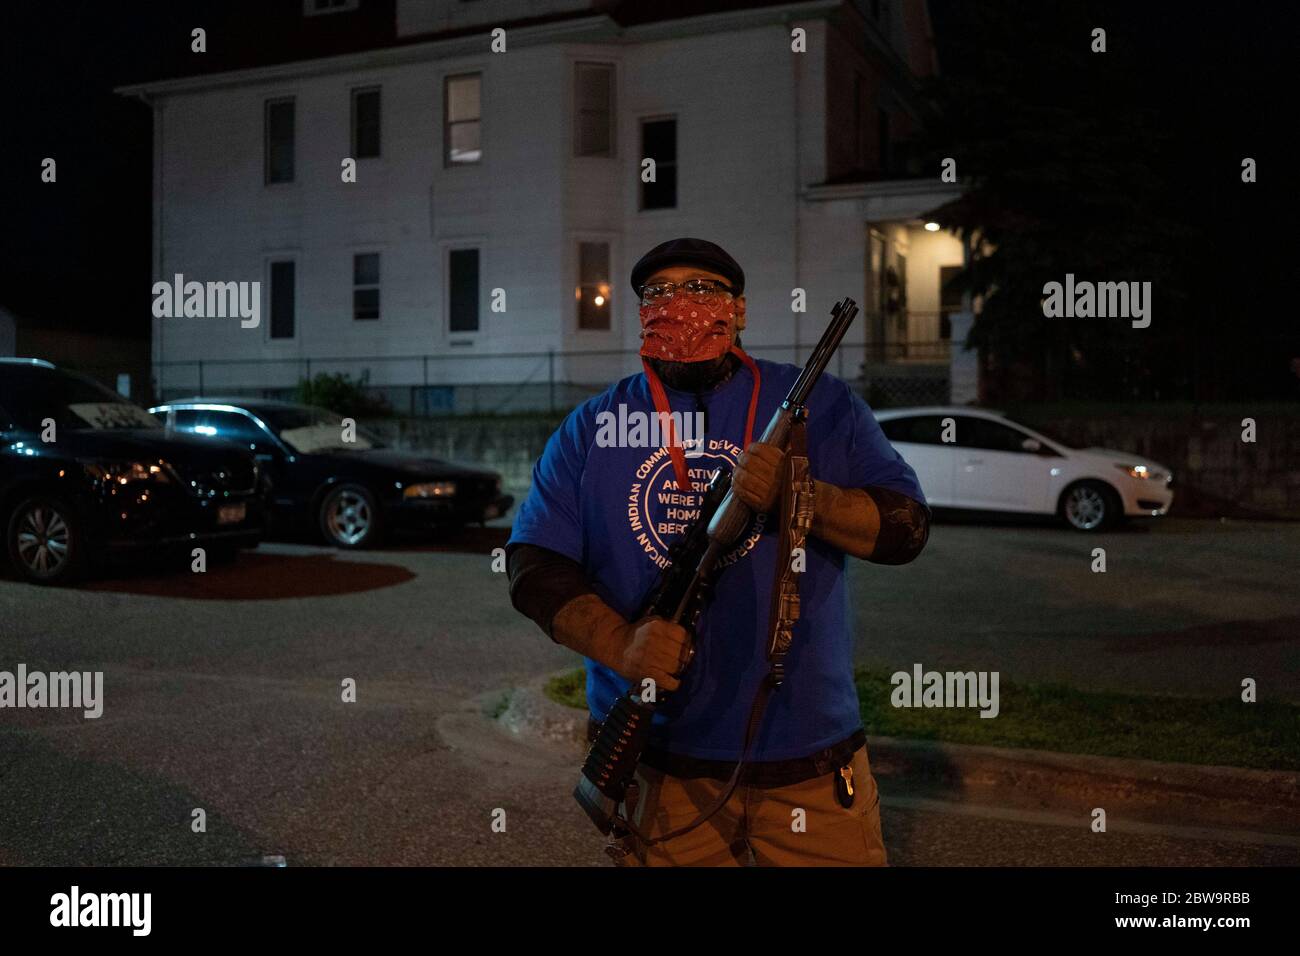 Minneapolis, Minnesota, EE.UU. 30 de mayo de 2020. Un nativo americano, sosteniendo un rifle, protege su vecindario durante las protestas de George Floyd el sábado, 30 de mayo de 2020, en Minneapolis, Minnesota. Crédito: SAIT Serkan Gurbuz/ZUMA Wire/Alamy Live News Foto de stock